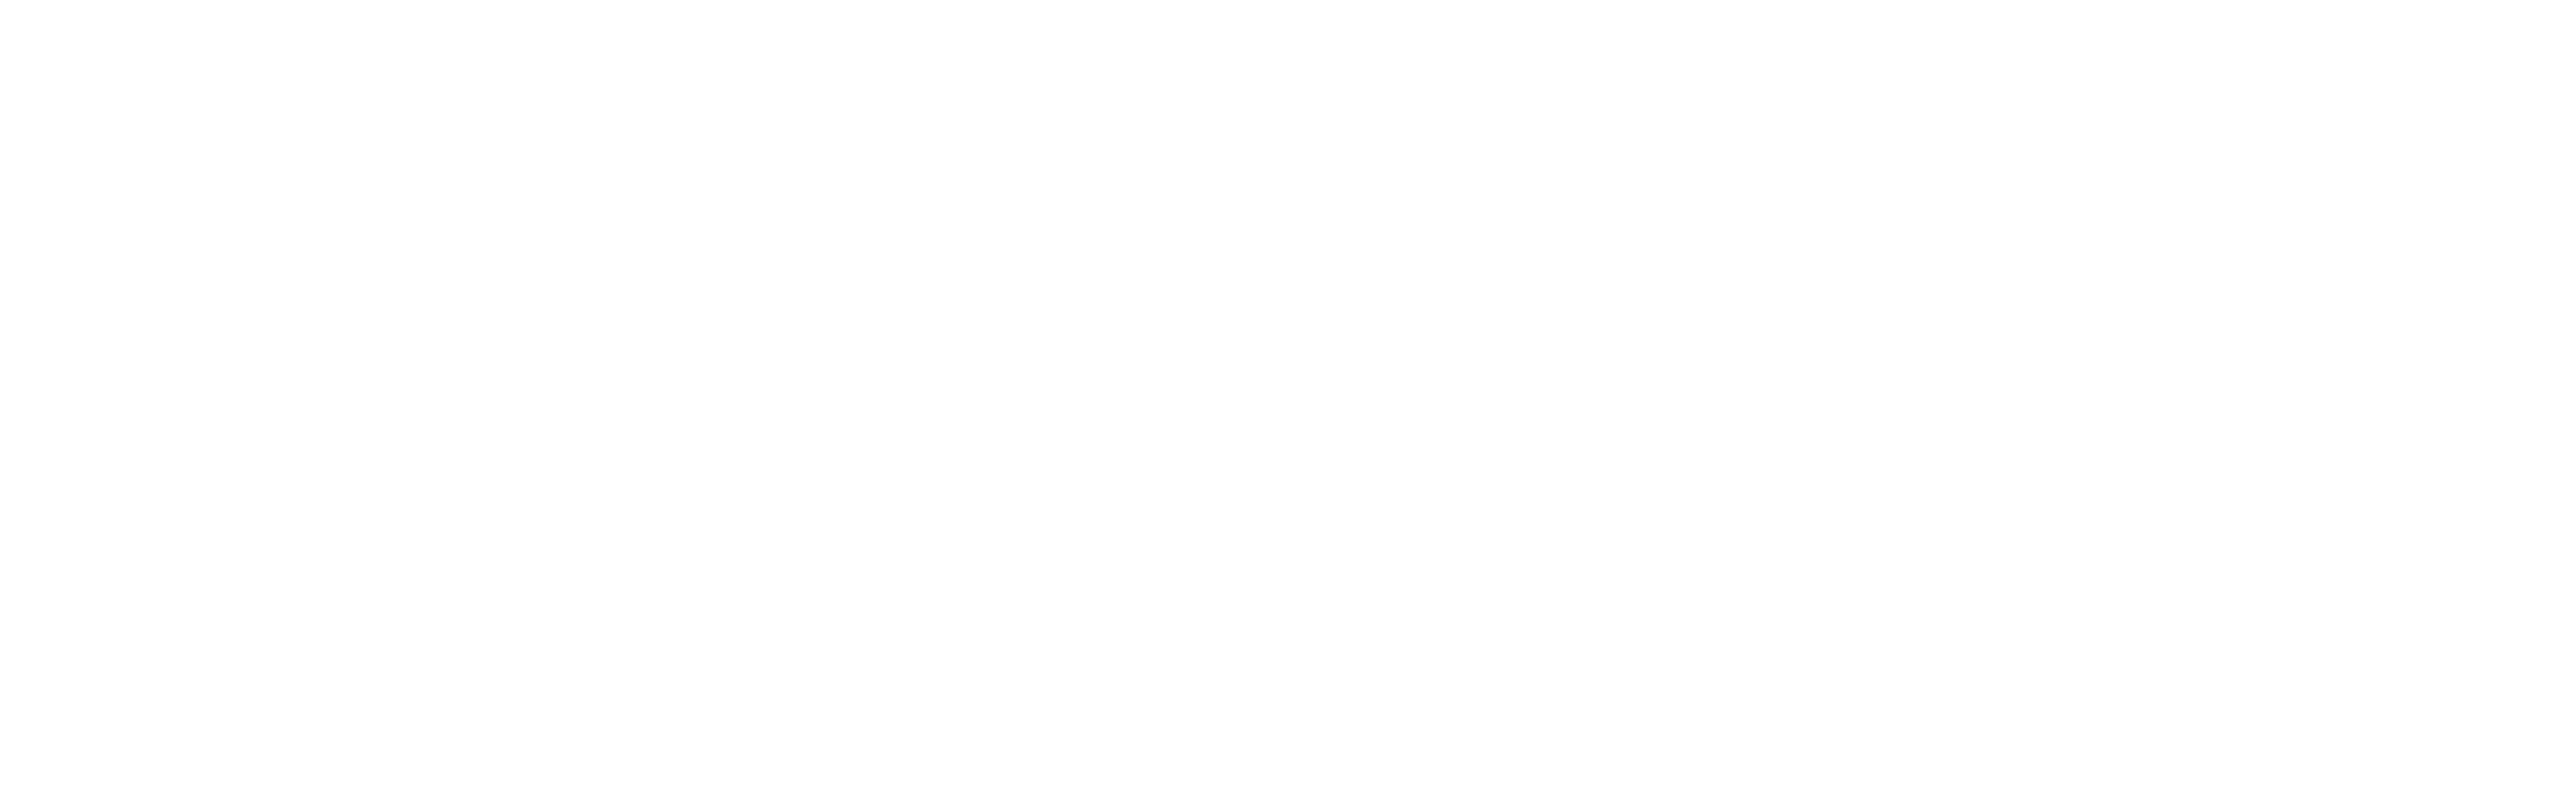 zennison logo